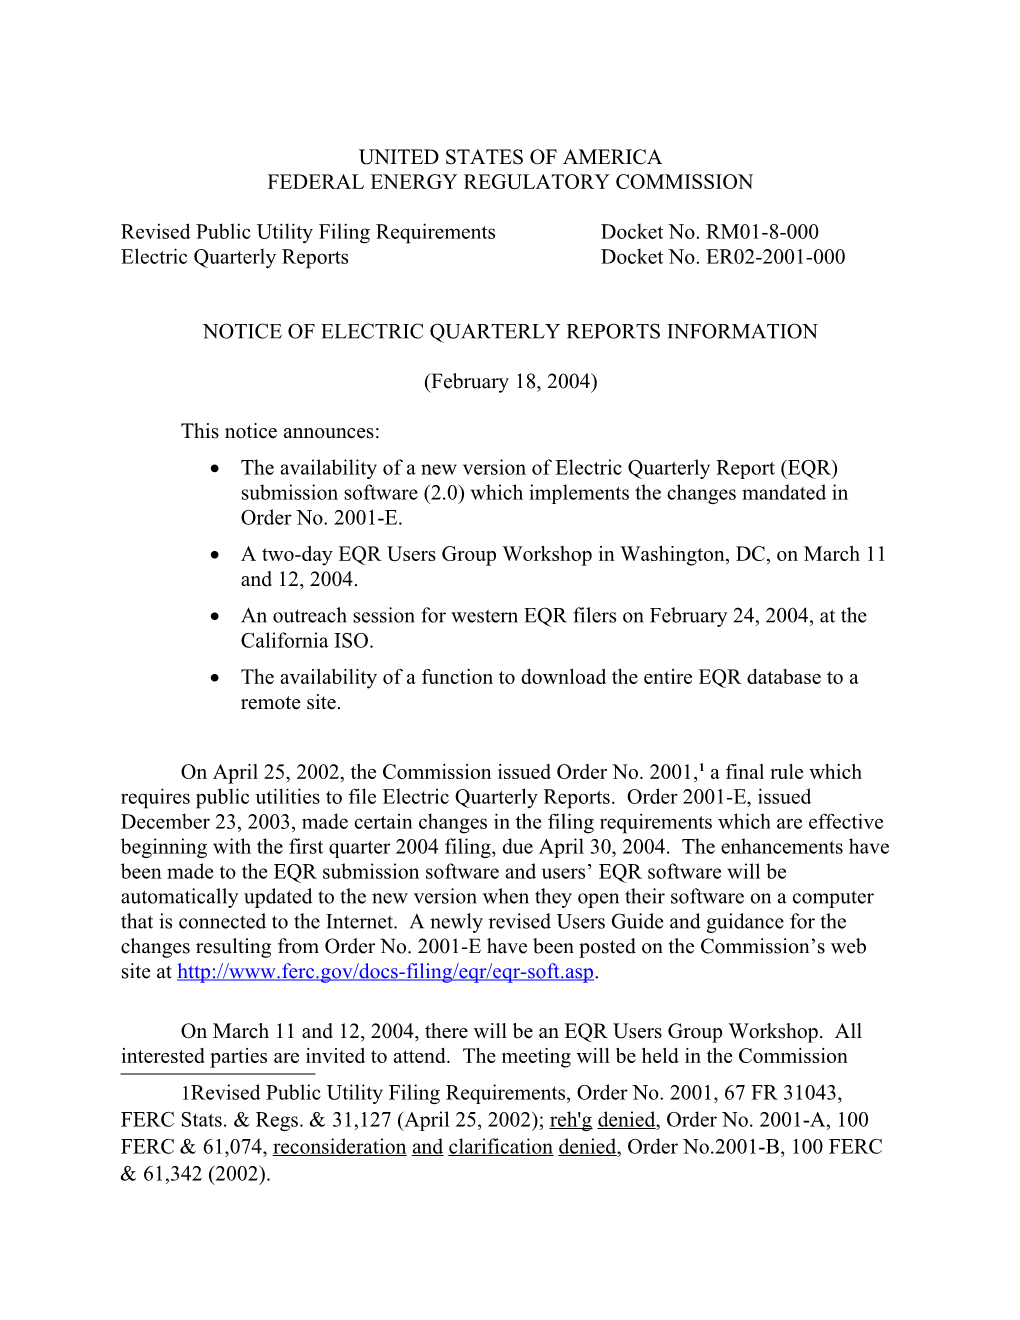 Notice of EQR Information in Docket Nos. RM01-8-000, Et Al. (Revised Public Utility Filing